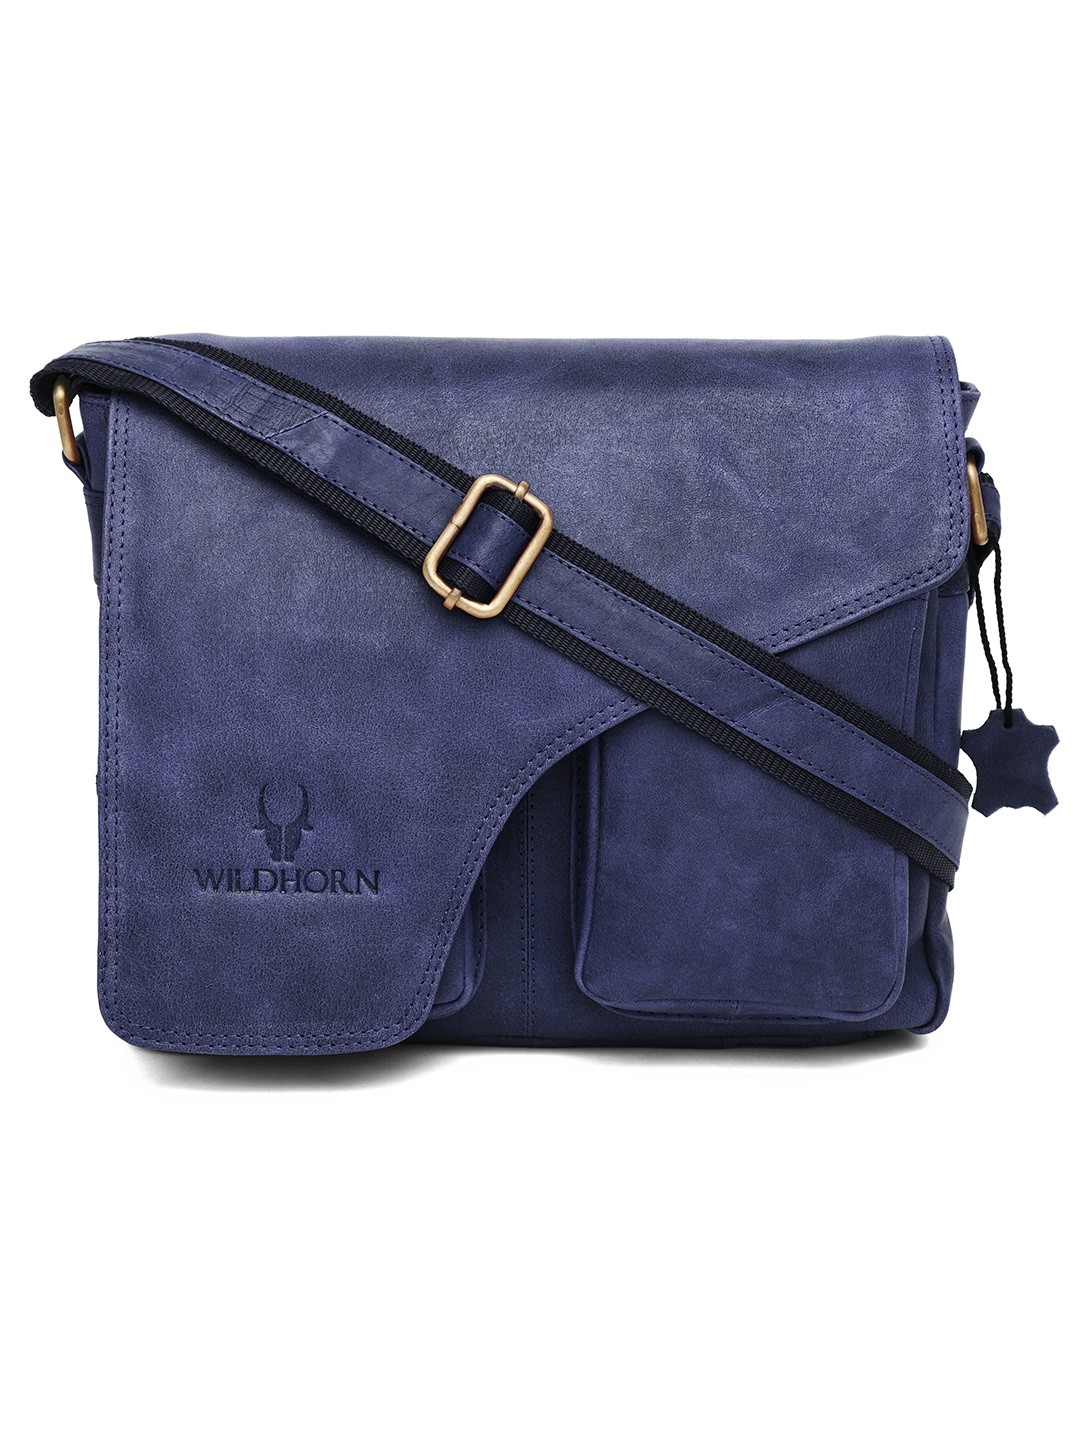 WildHorn | WildHorn Blue Classic Leather Adjustable Strap Messenger Bag for Men 